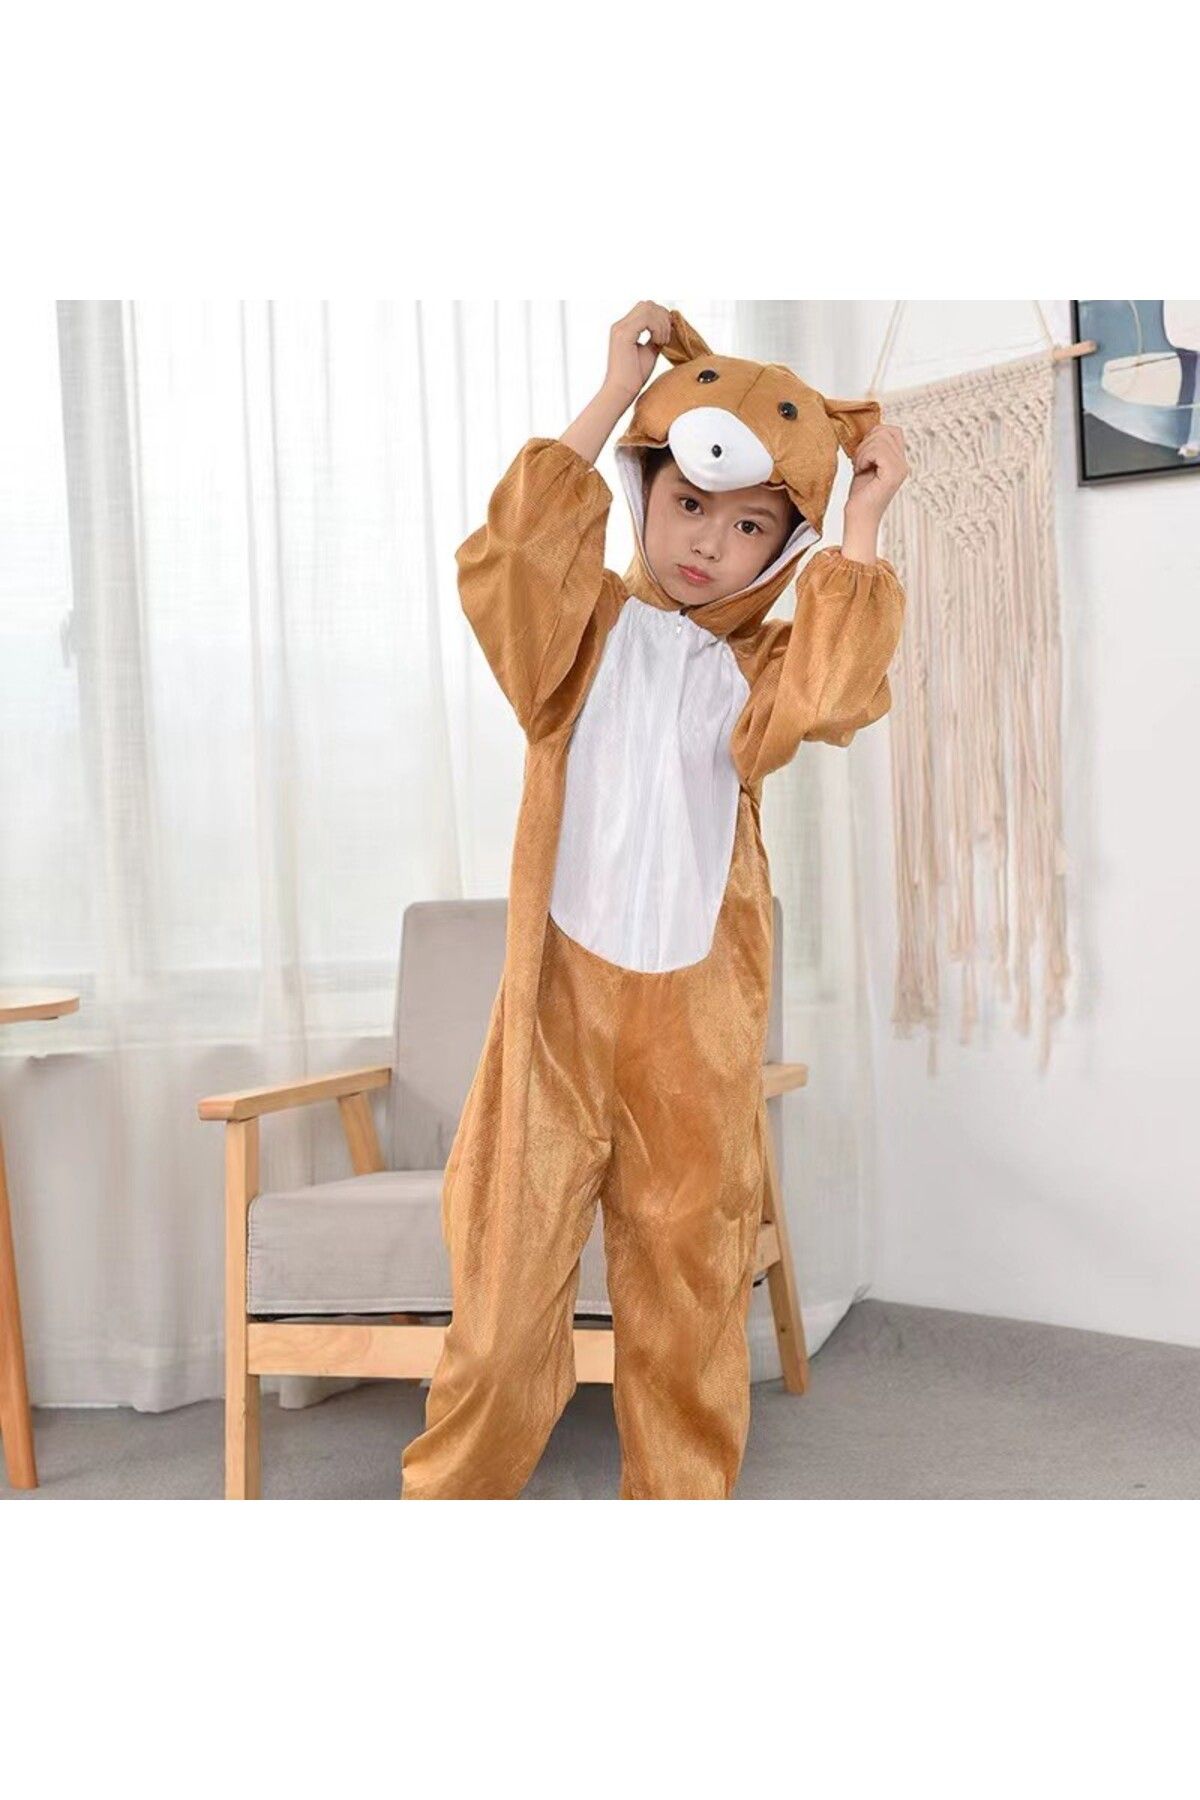 MAGİTOPTAN Himarry Çocuk Ayı Kostümü - Maymun Kostümü 6-7 Yaş 120 Cm